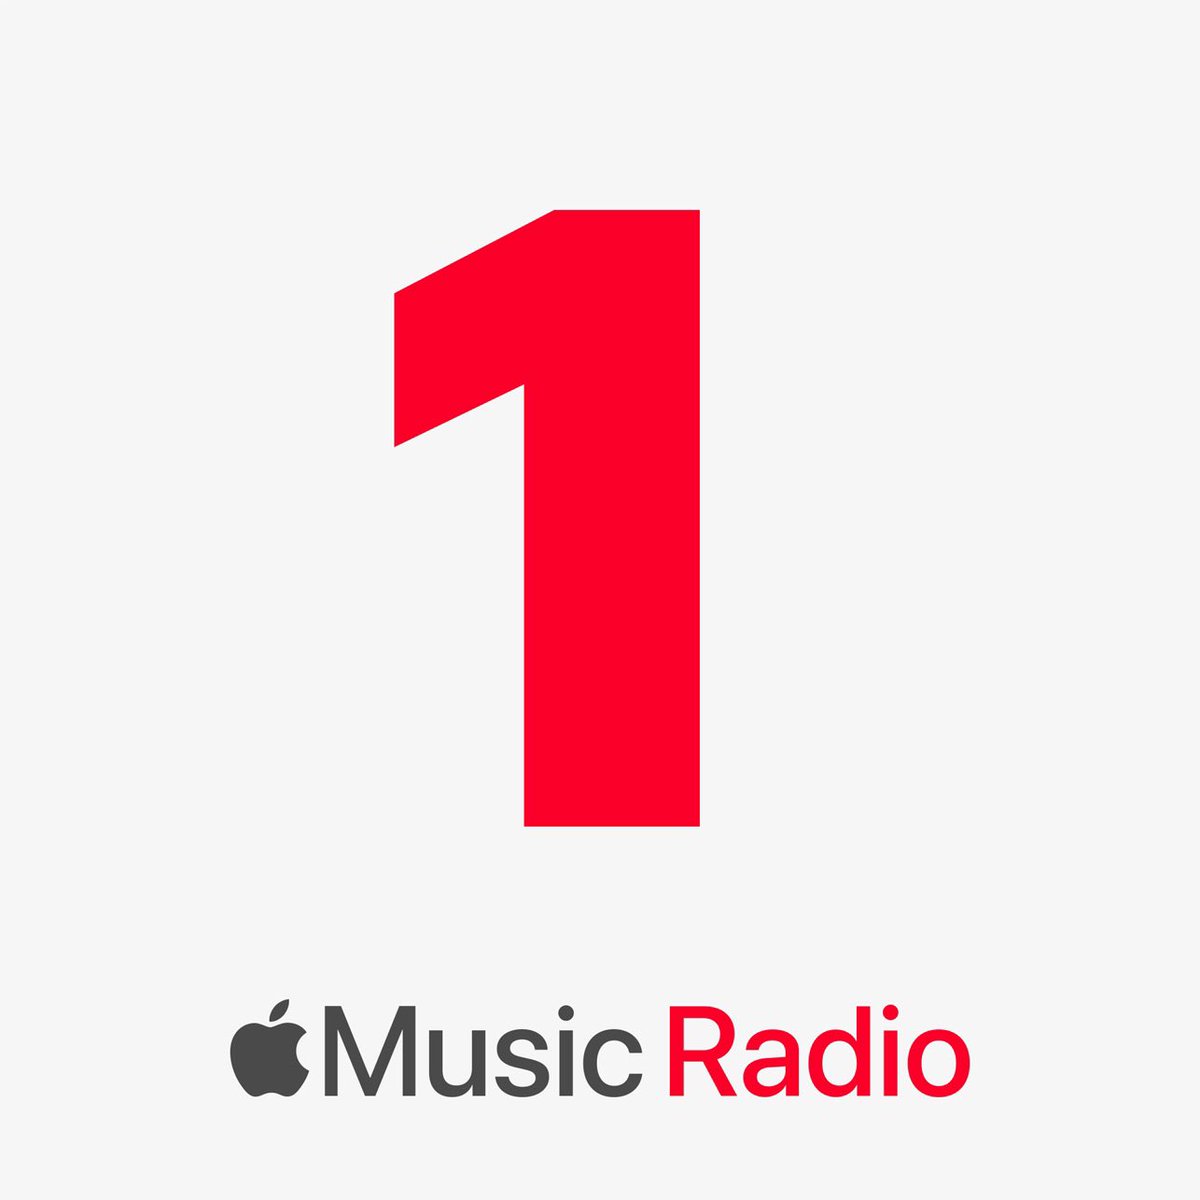 #Apple anuncia su primer cambio significativo después de 5 años con @Beats1 y en breve se harán cambios por MusicRadio1 

Destacando: 
AppleMusicHits
AppleMusicCountry

Más información en Breve.
#QuedateEnCasa